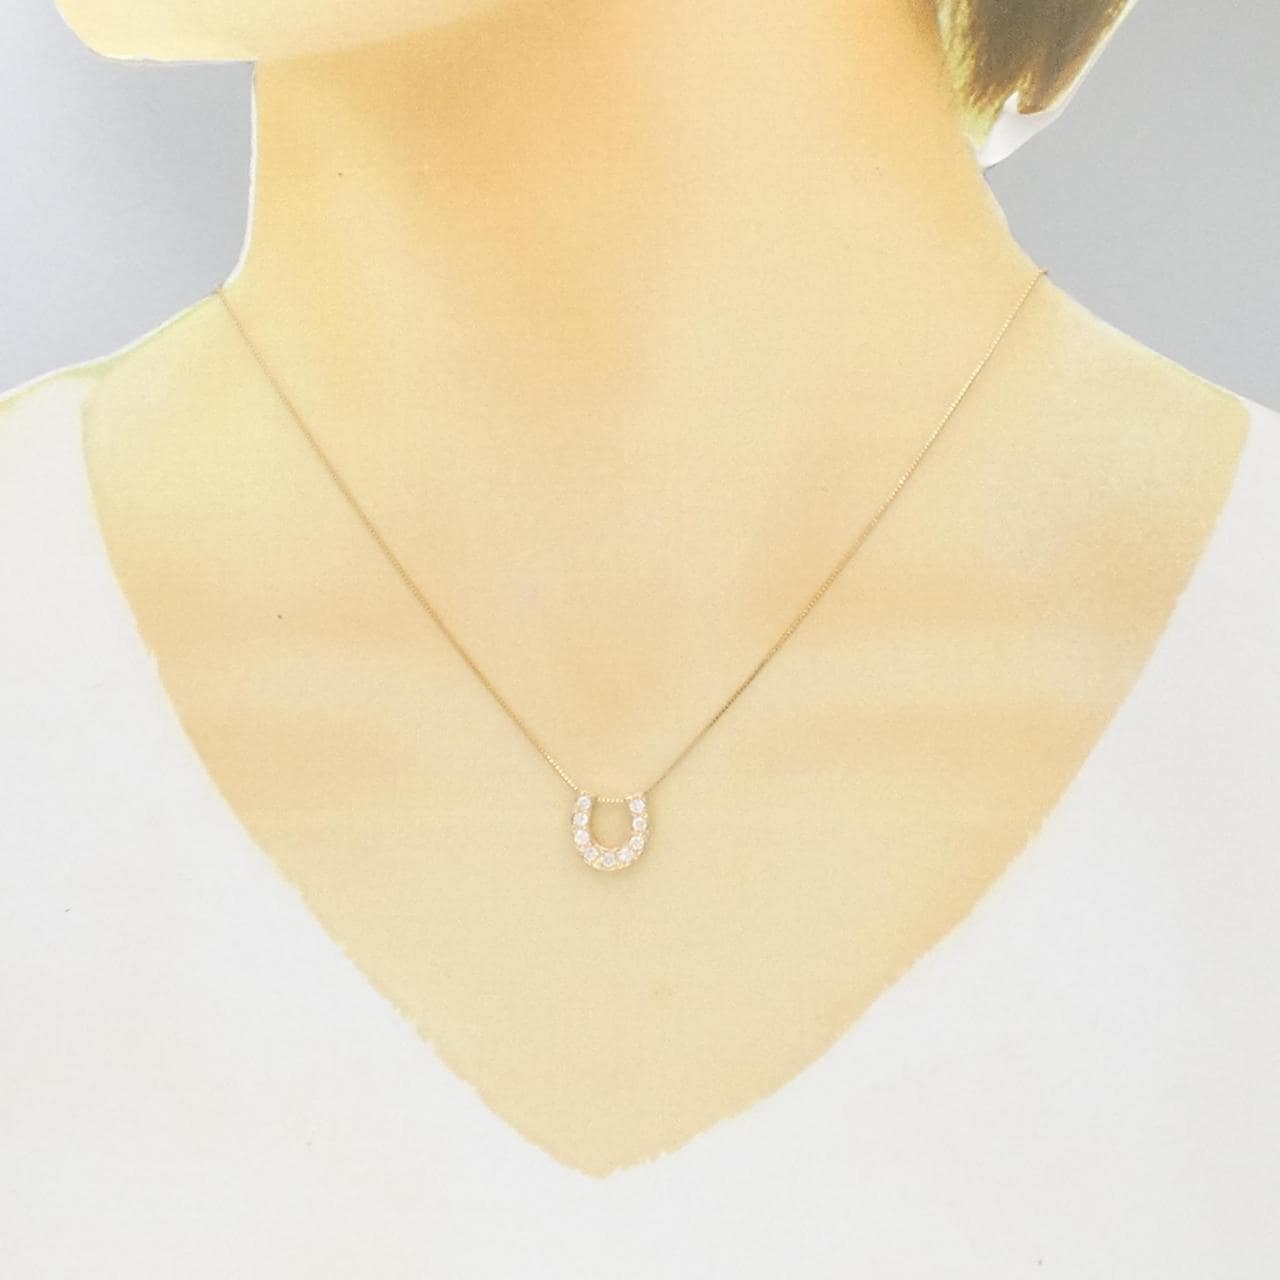 K18PG Horseshoe Diamond Necklace 0.30CT